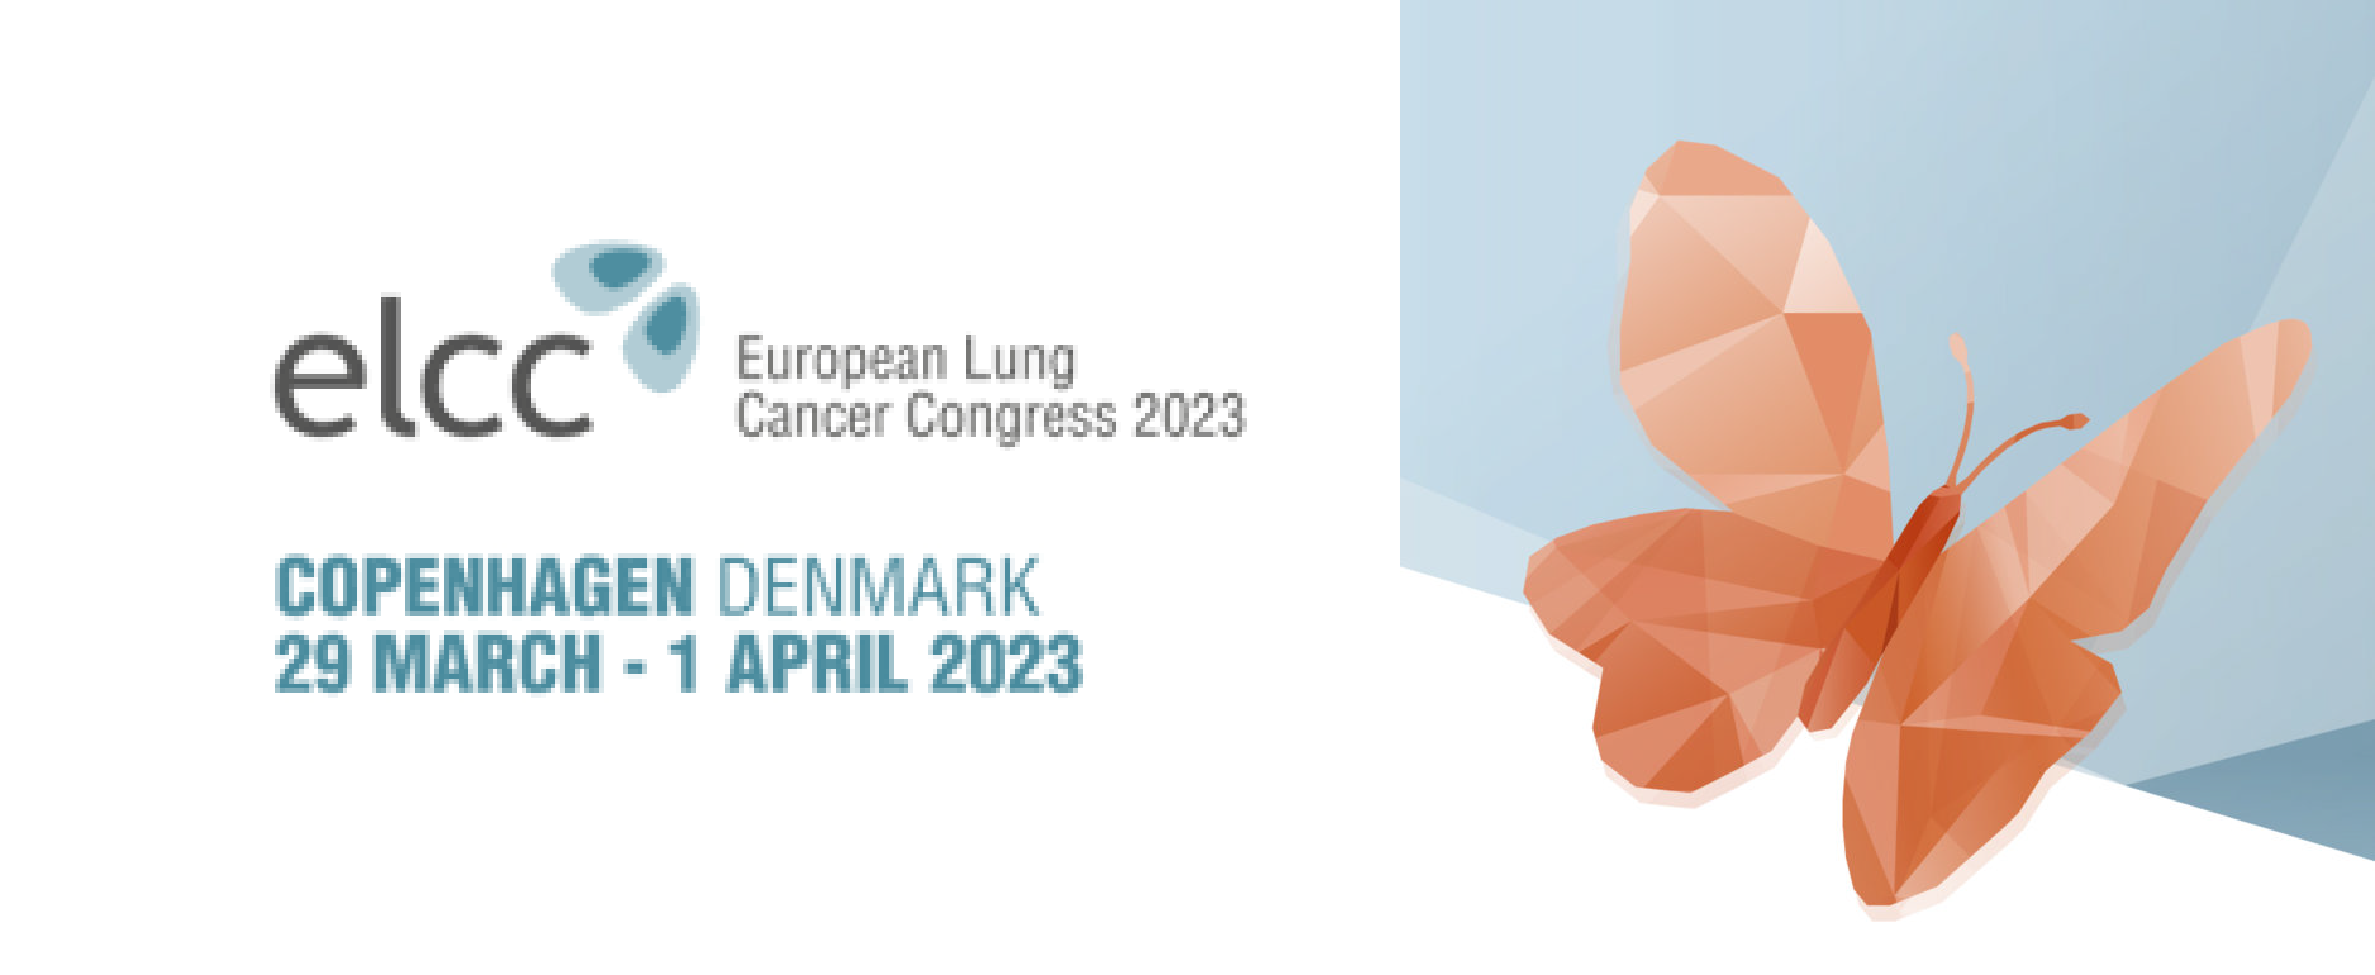 European Lung Cancer Congress - ELCC 2023